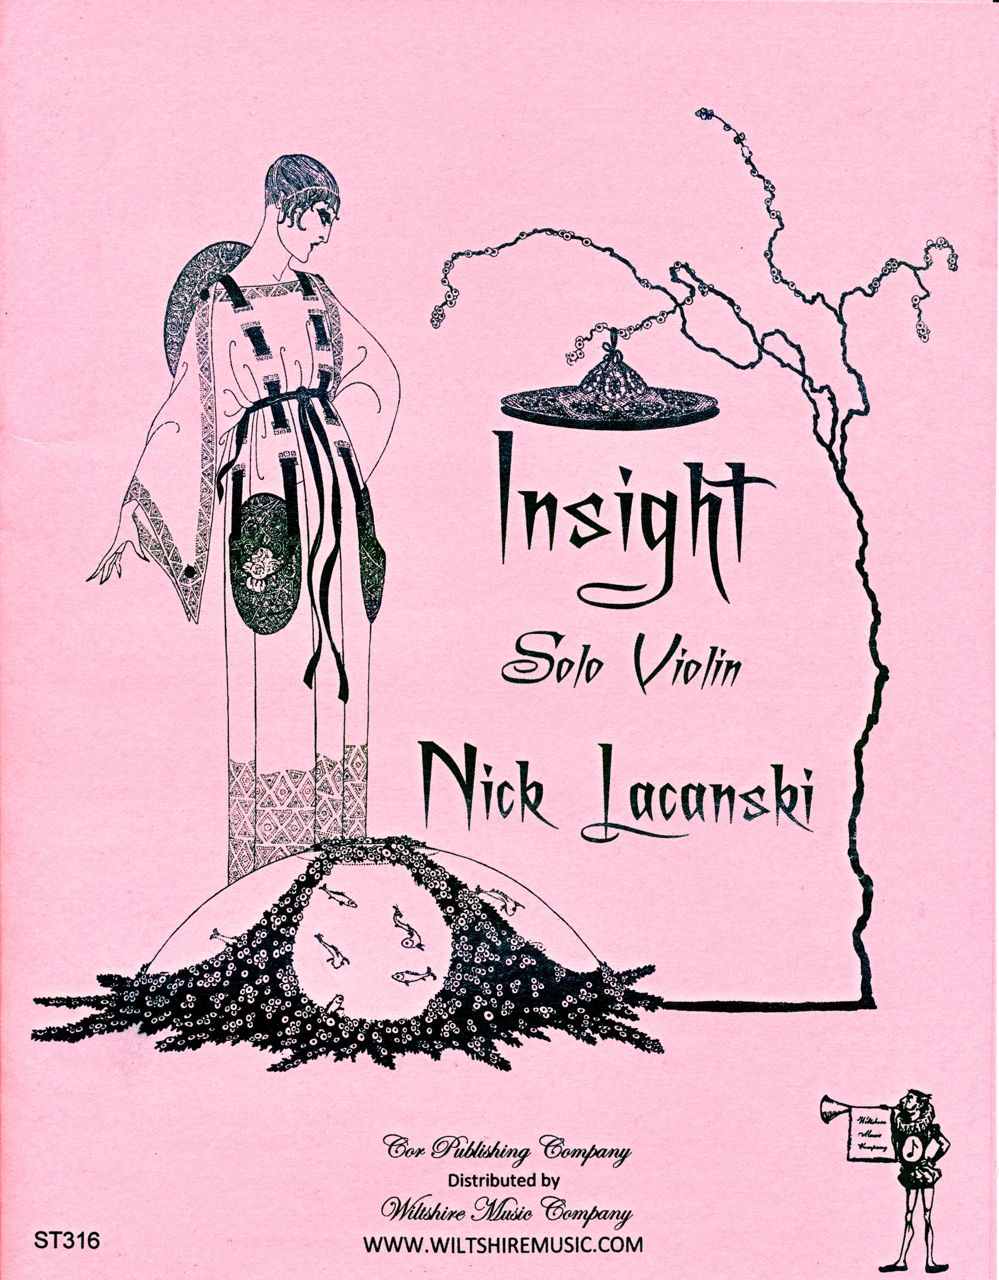 Insight, Nick Lacanski - for solo violin